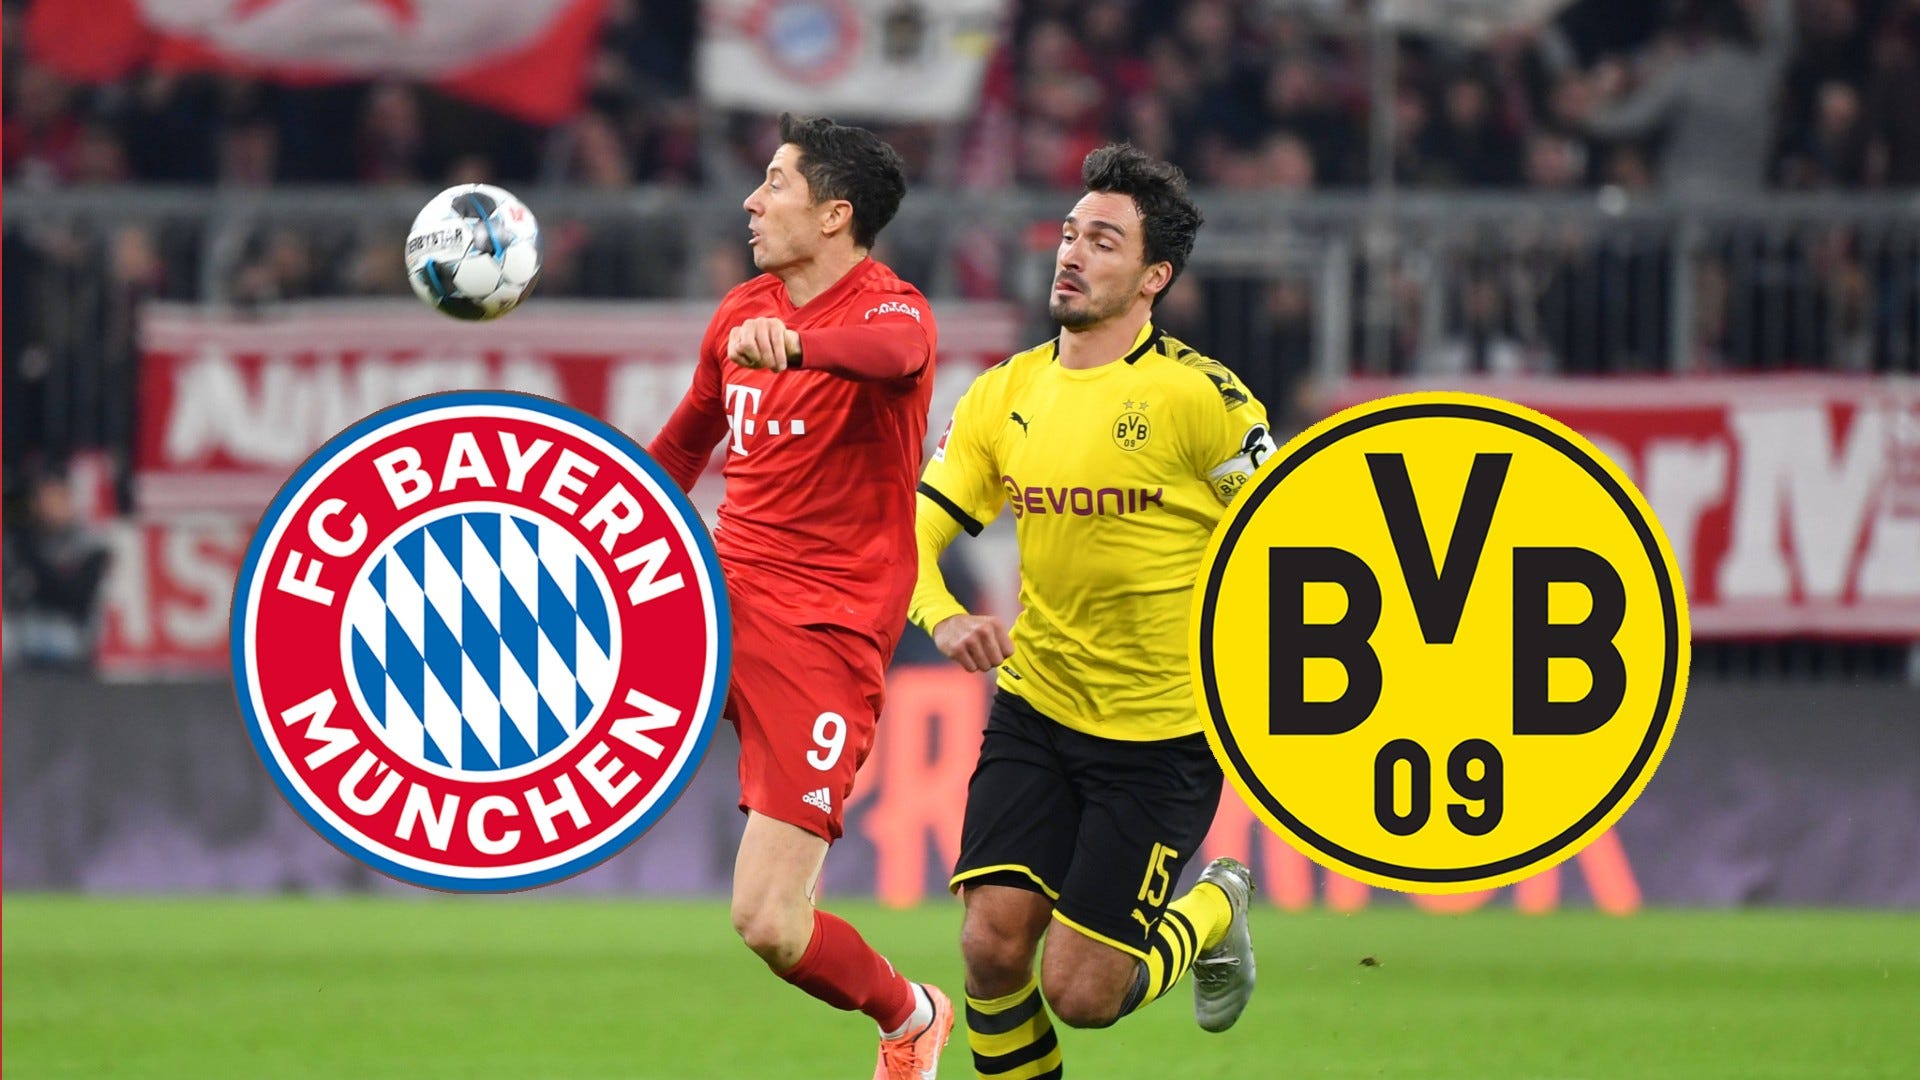 Programm Aufstellung Statistik Supercup 2017 Borussia Dortmund Bayern München #1 